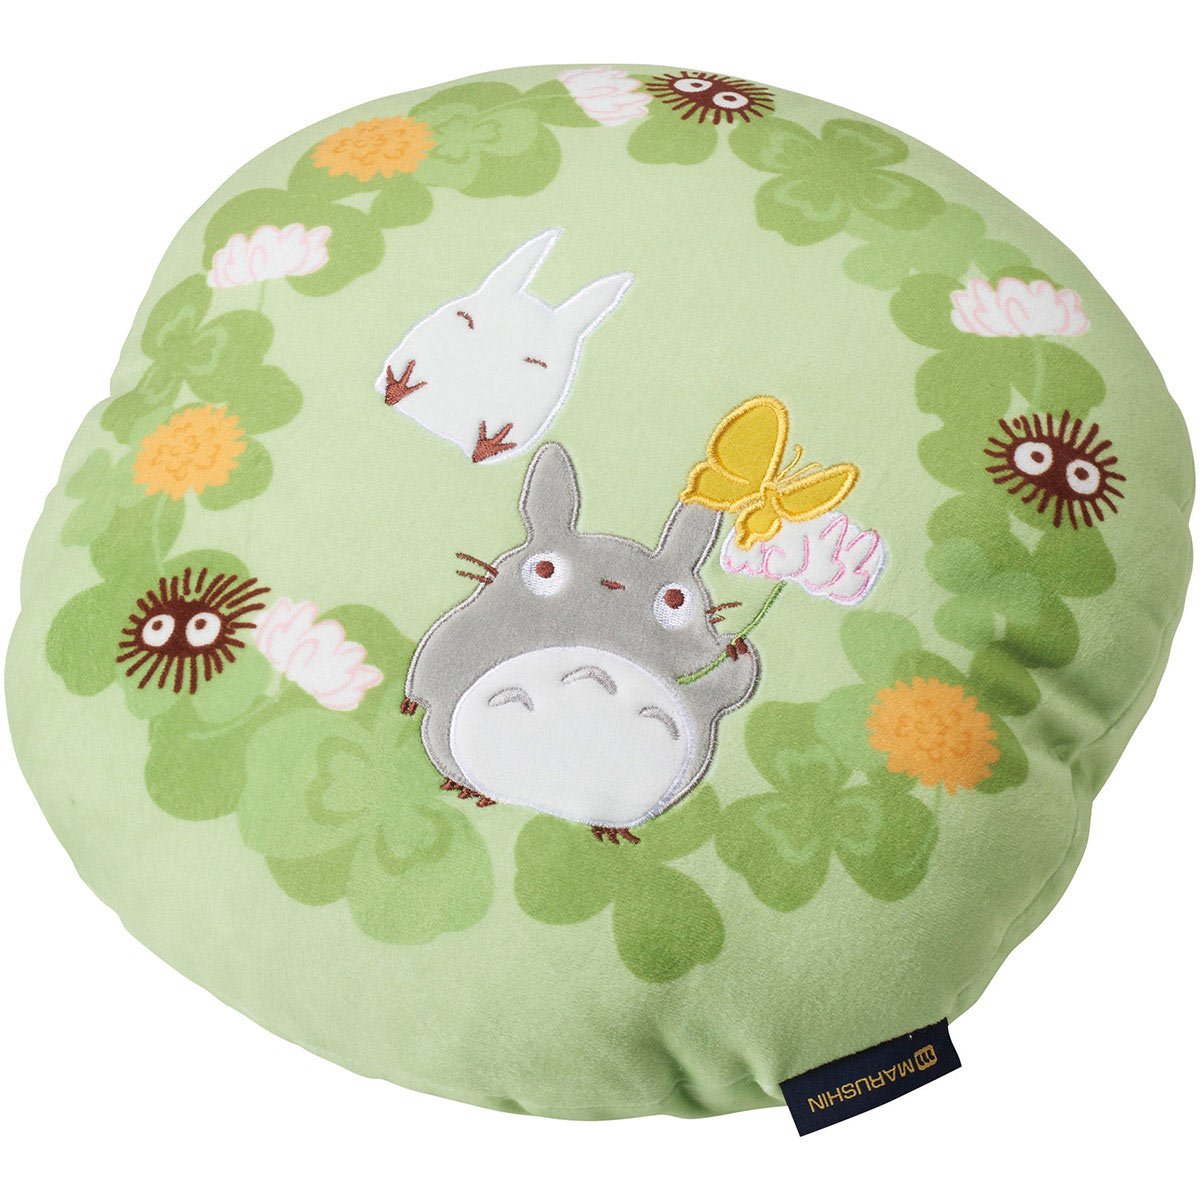 Studio Ghibli Pillow Cushion 3 Styles: Totoro, Jiji Cat, Cat Bus